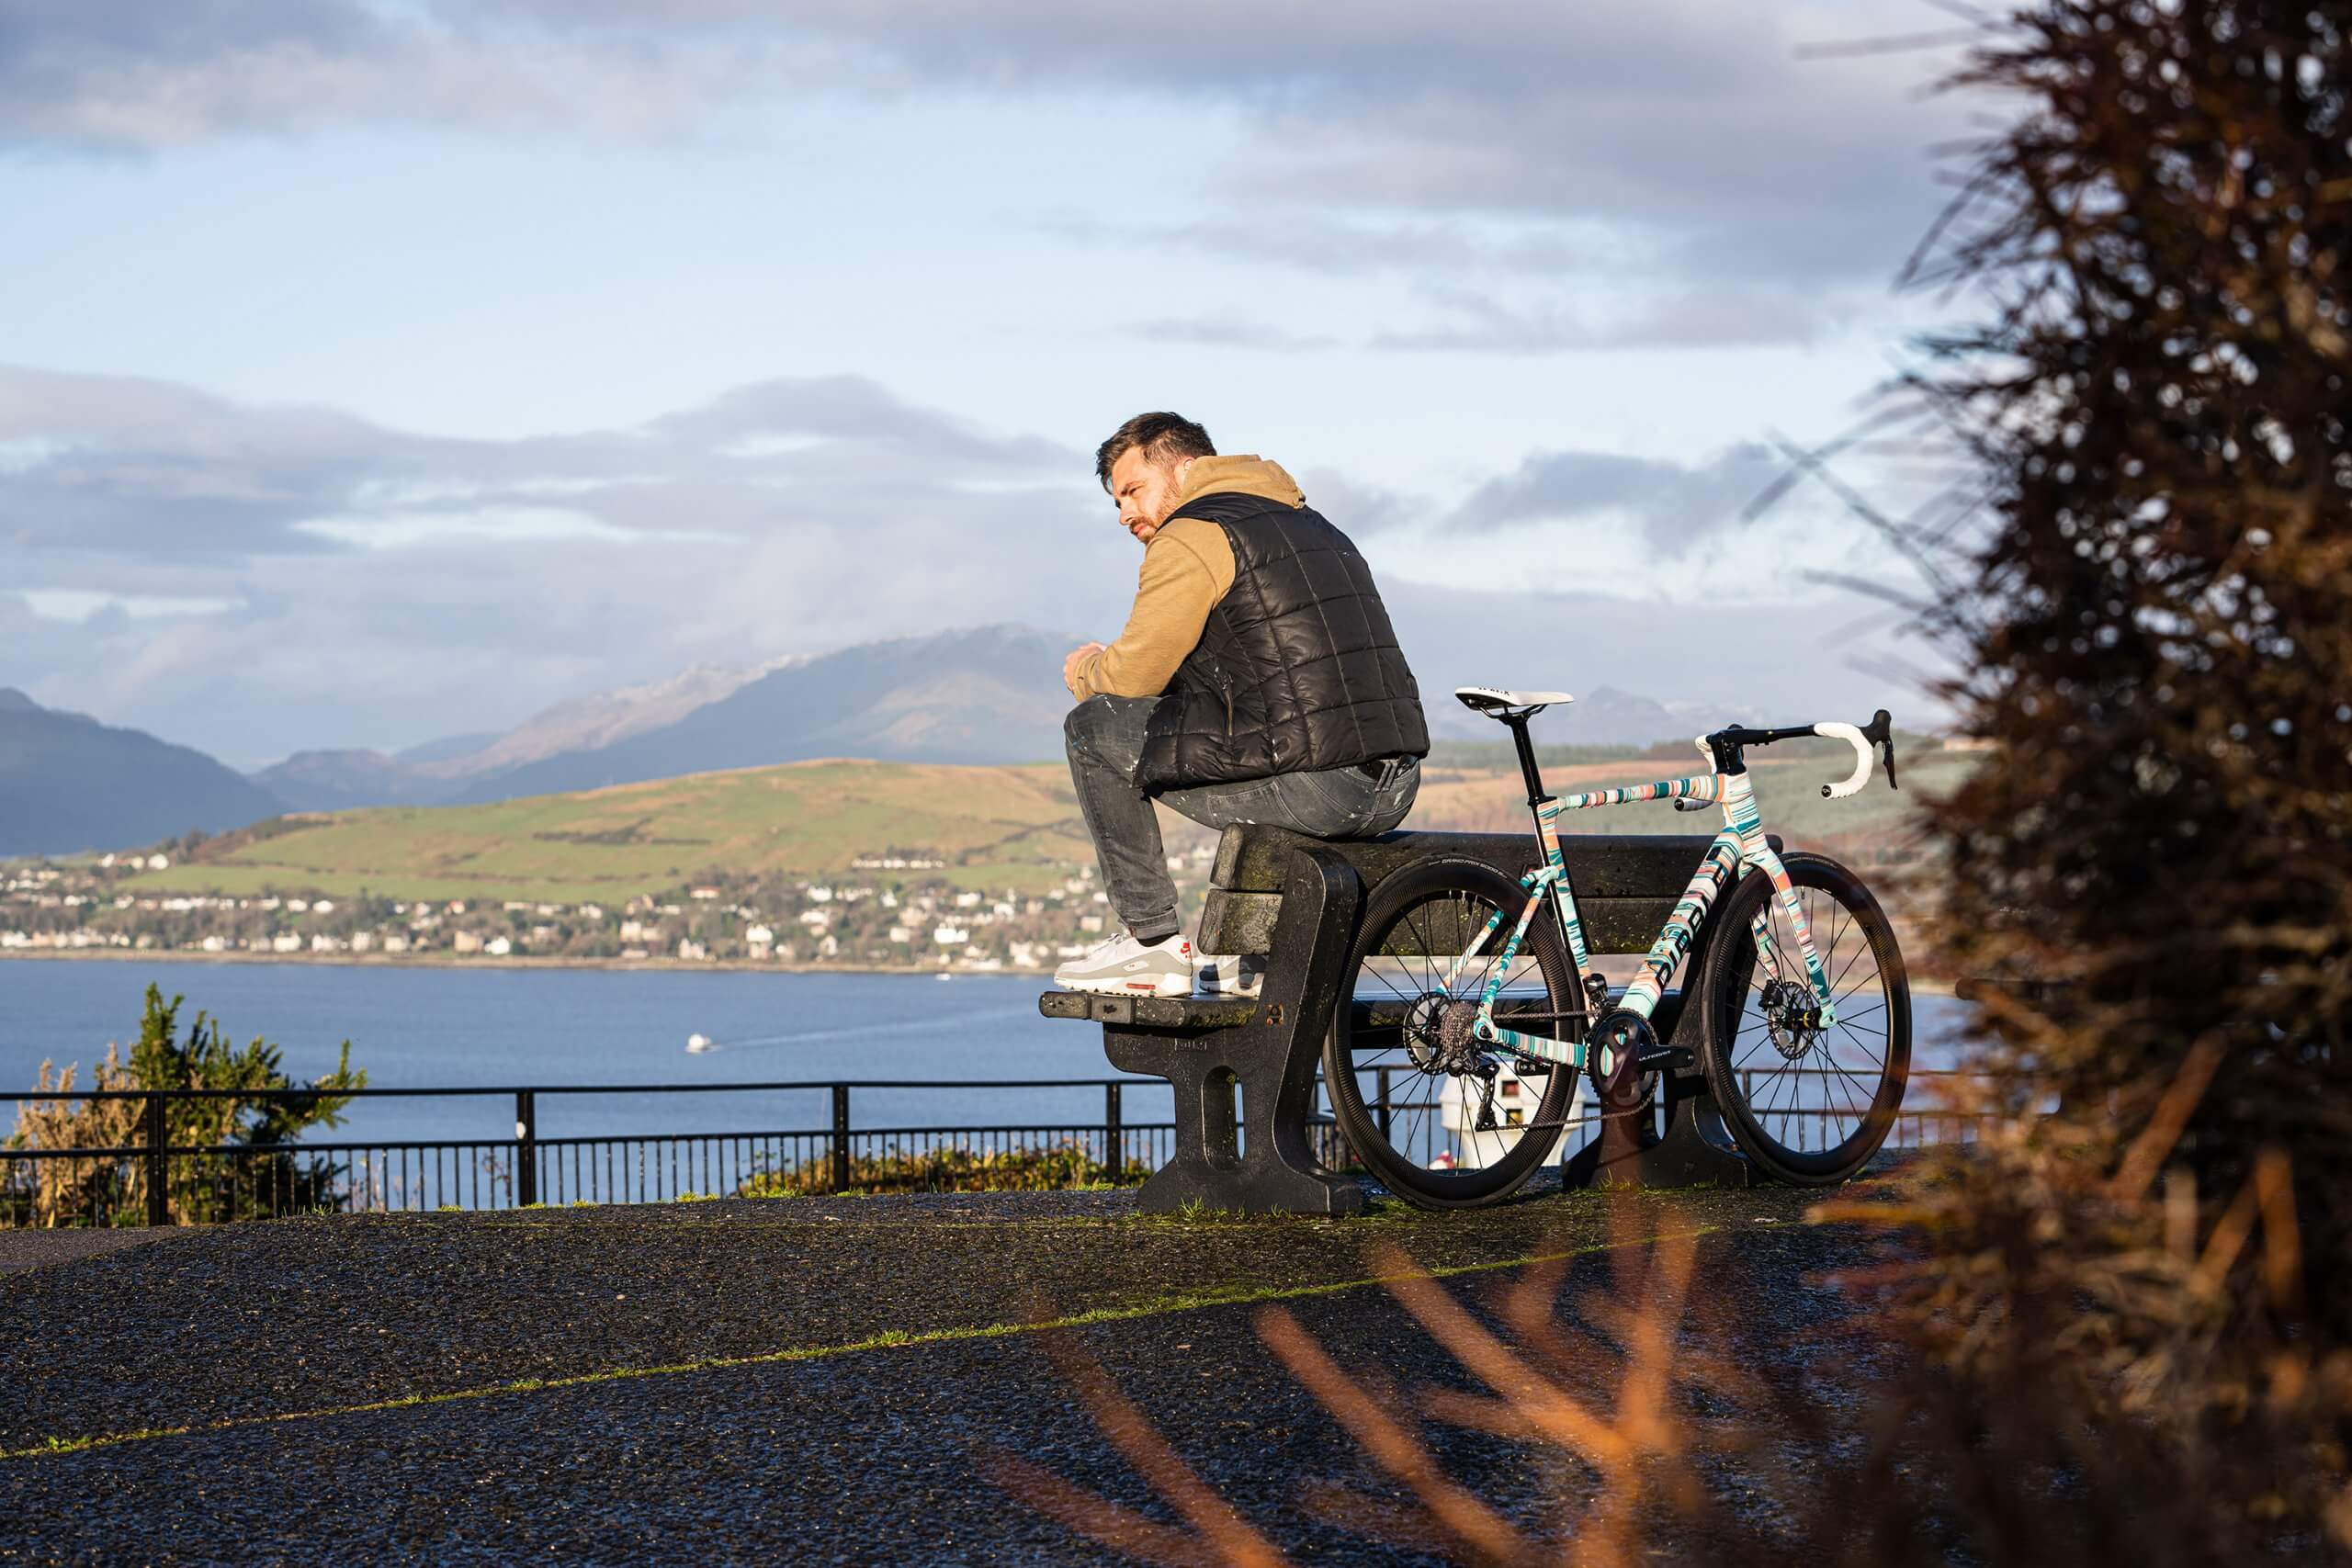 Craig Black x Ribble Cycles_Acrylic Fusion Endurance SL R_Bike C